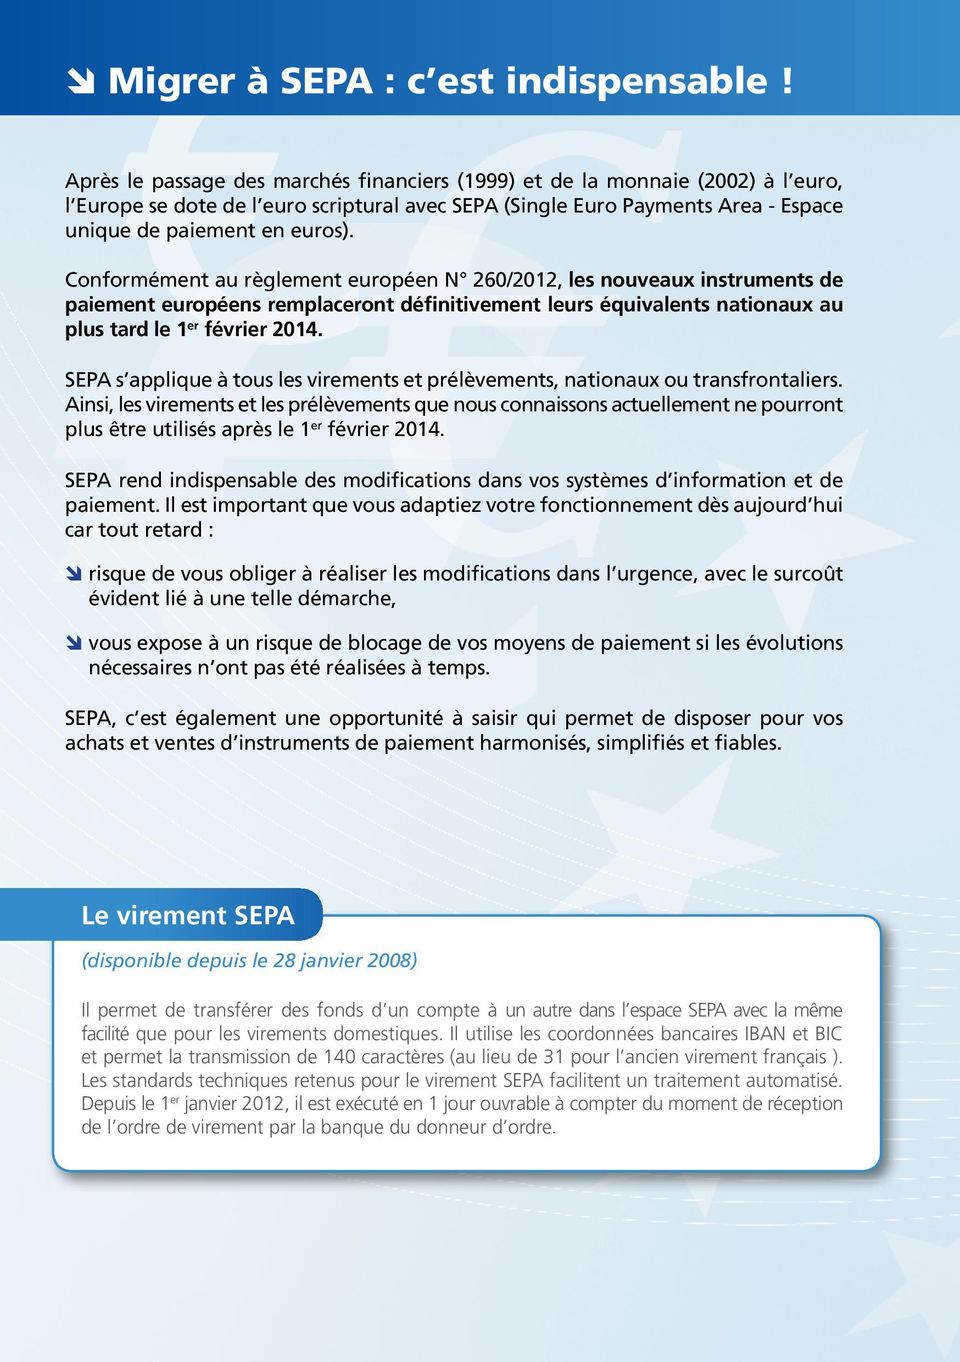 Conformément au règlement européen N 260/2012, les nouveaux instruments de paiement européens remplaceront définitivement leurs équivalents nationaux au plus tard le 1 er février 2014.